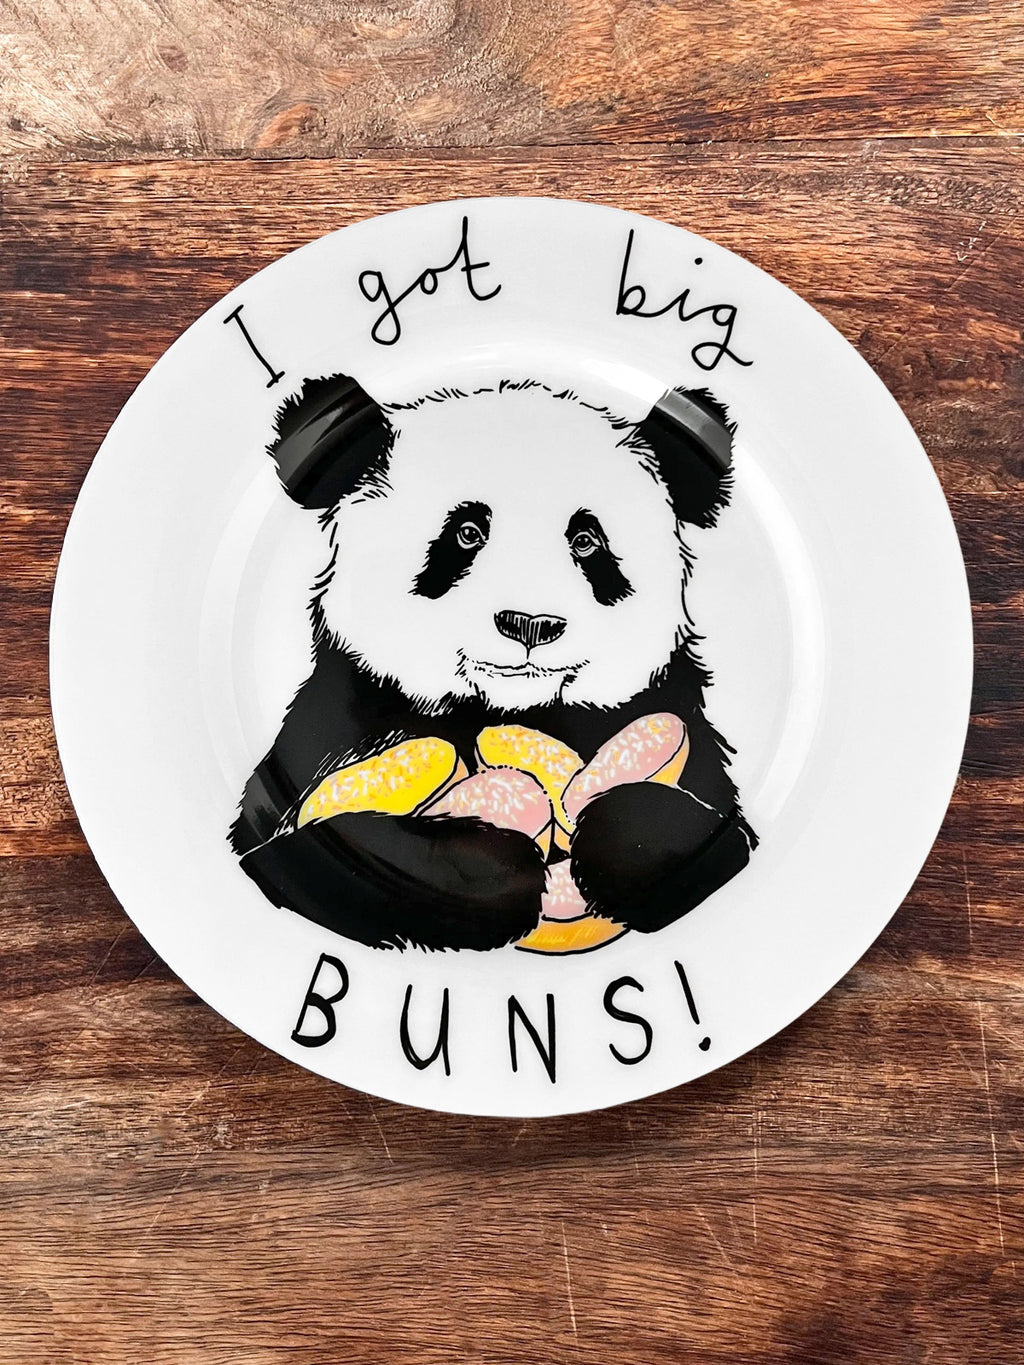 JimBobArt Side Plate - I Got Big Buns - Panda